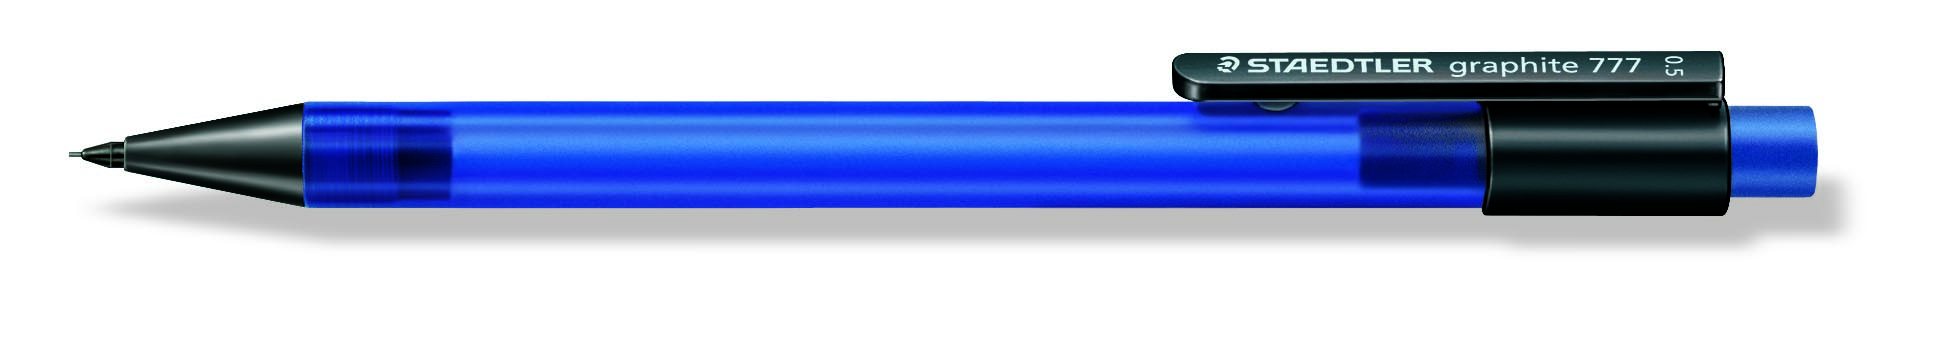 STAEDTLER Stiftblyant Graphite 777 0,5mm blå